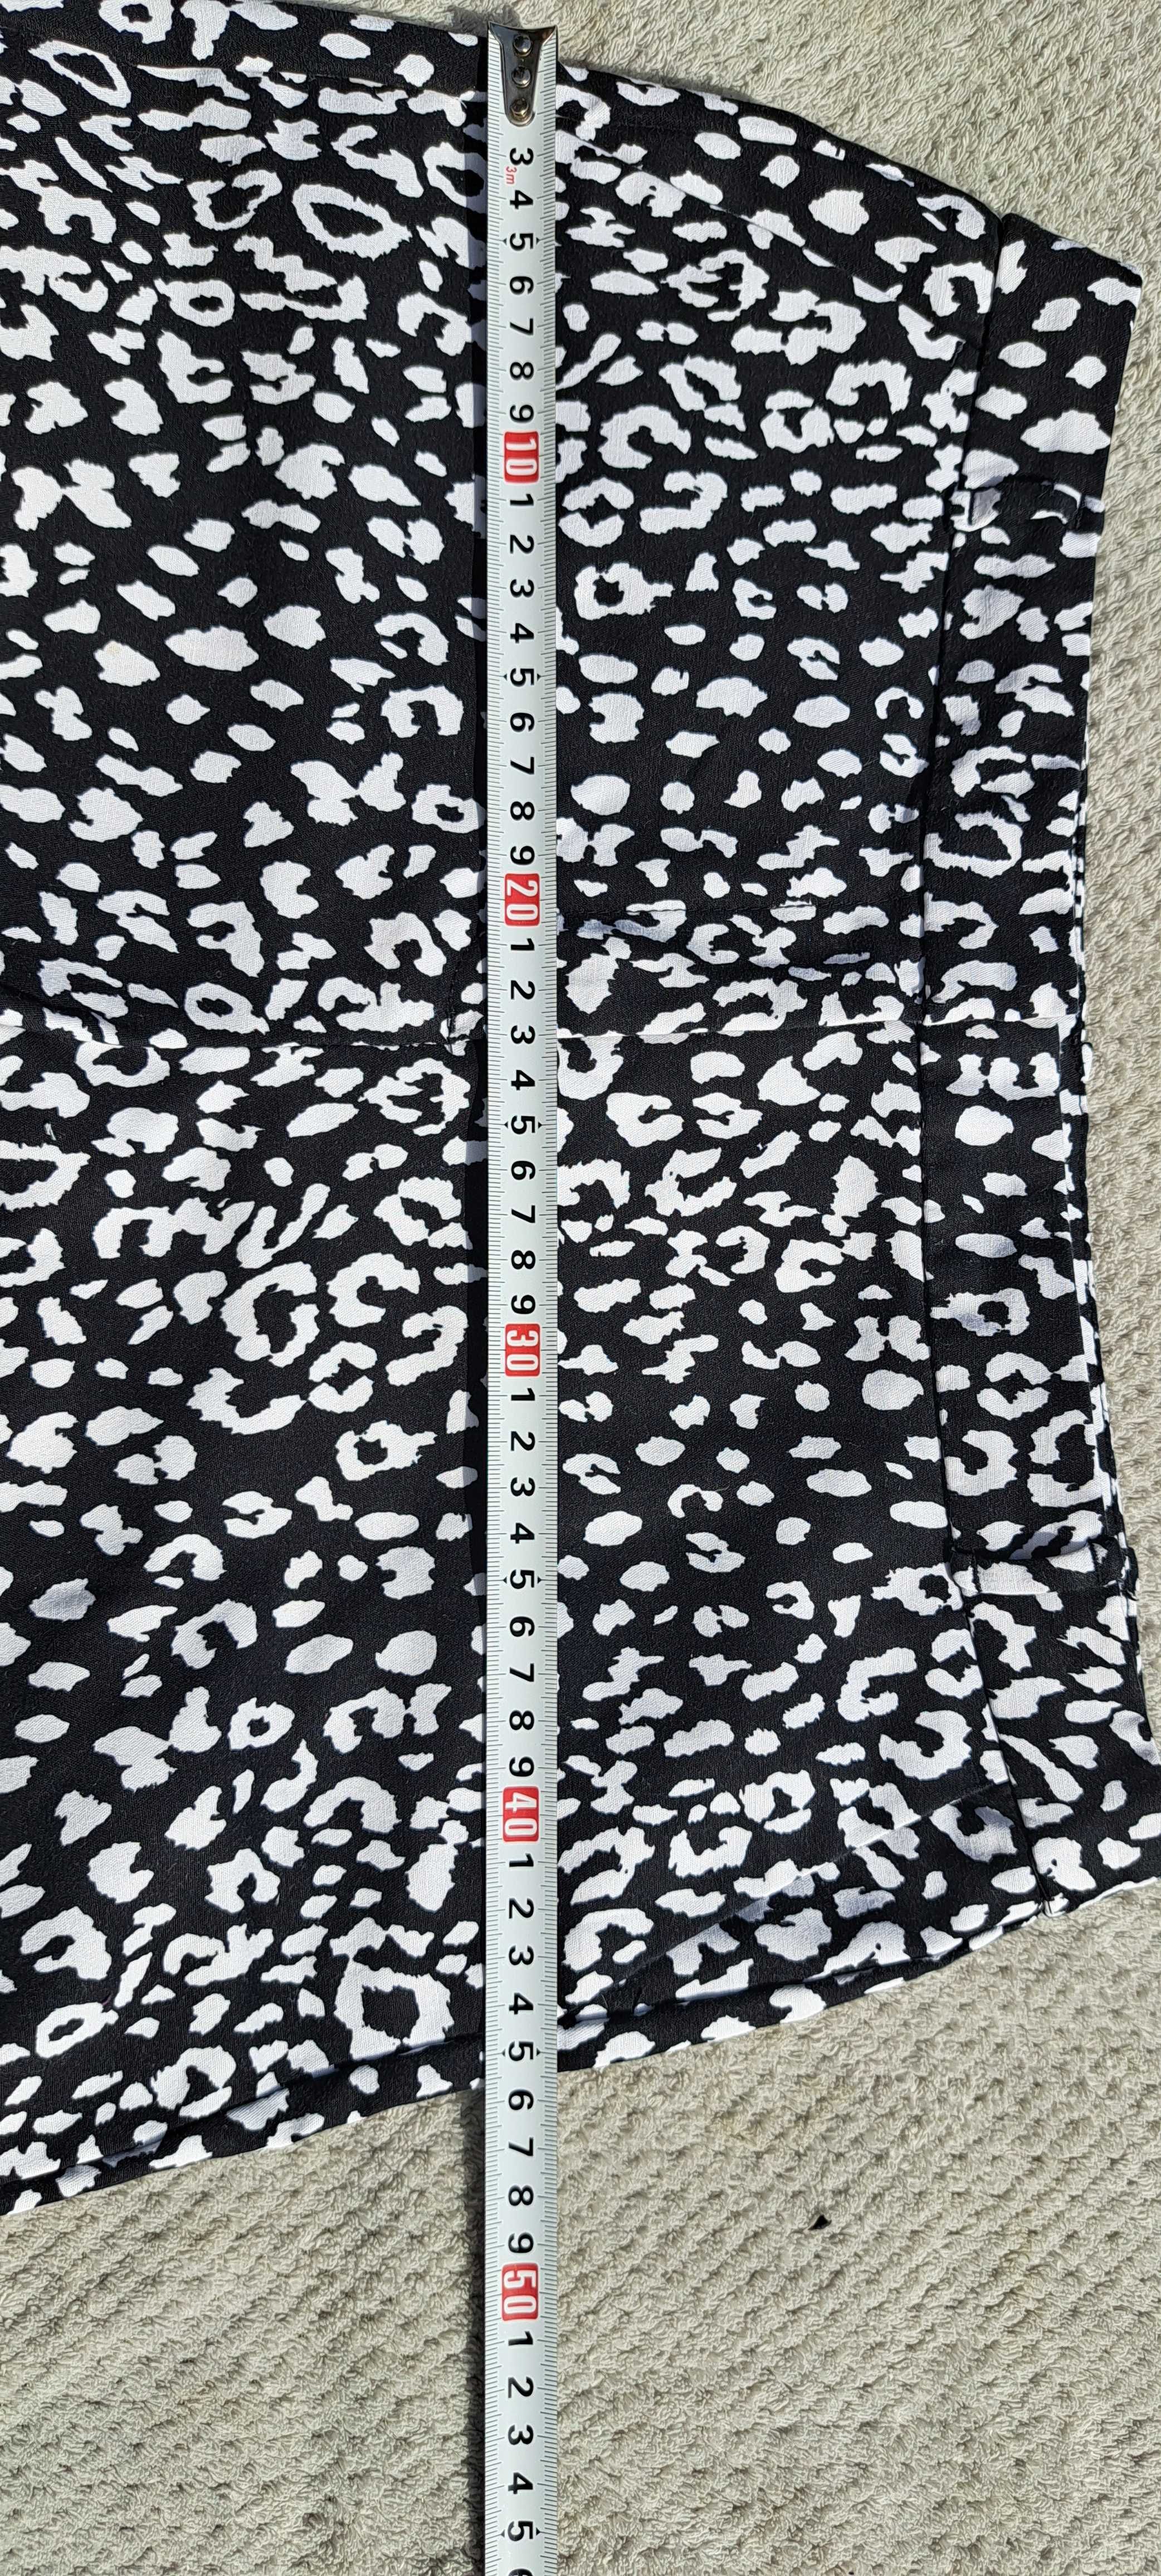 Spodnie damskie 38 Orsay czarno białe panterka eleganckie bawełna